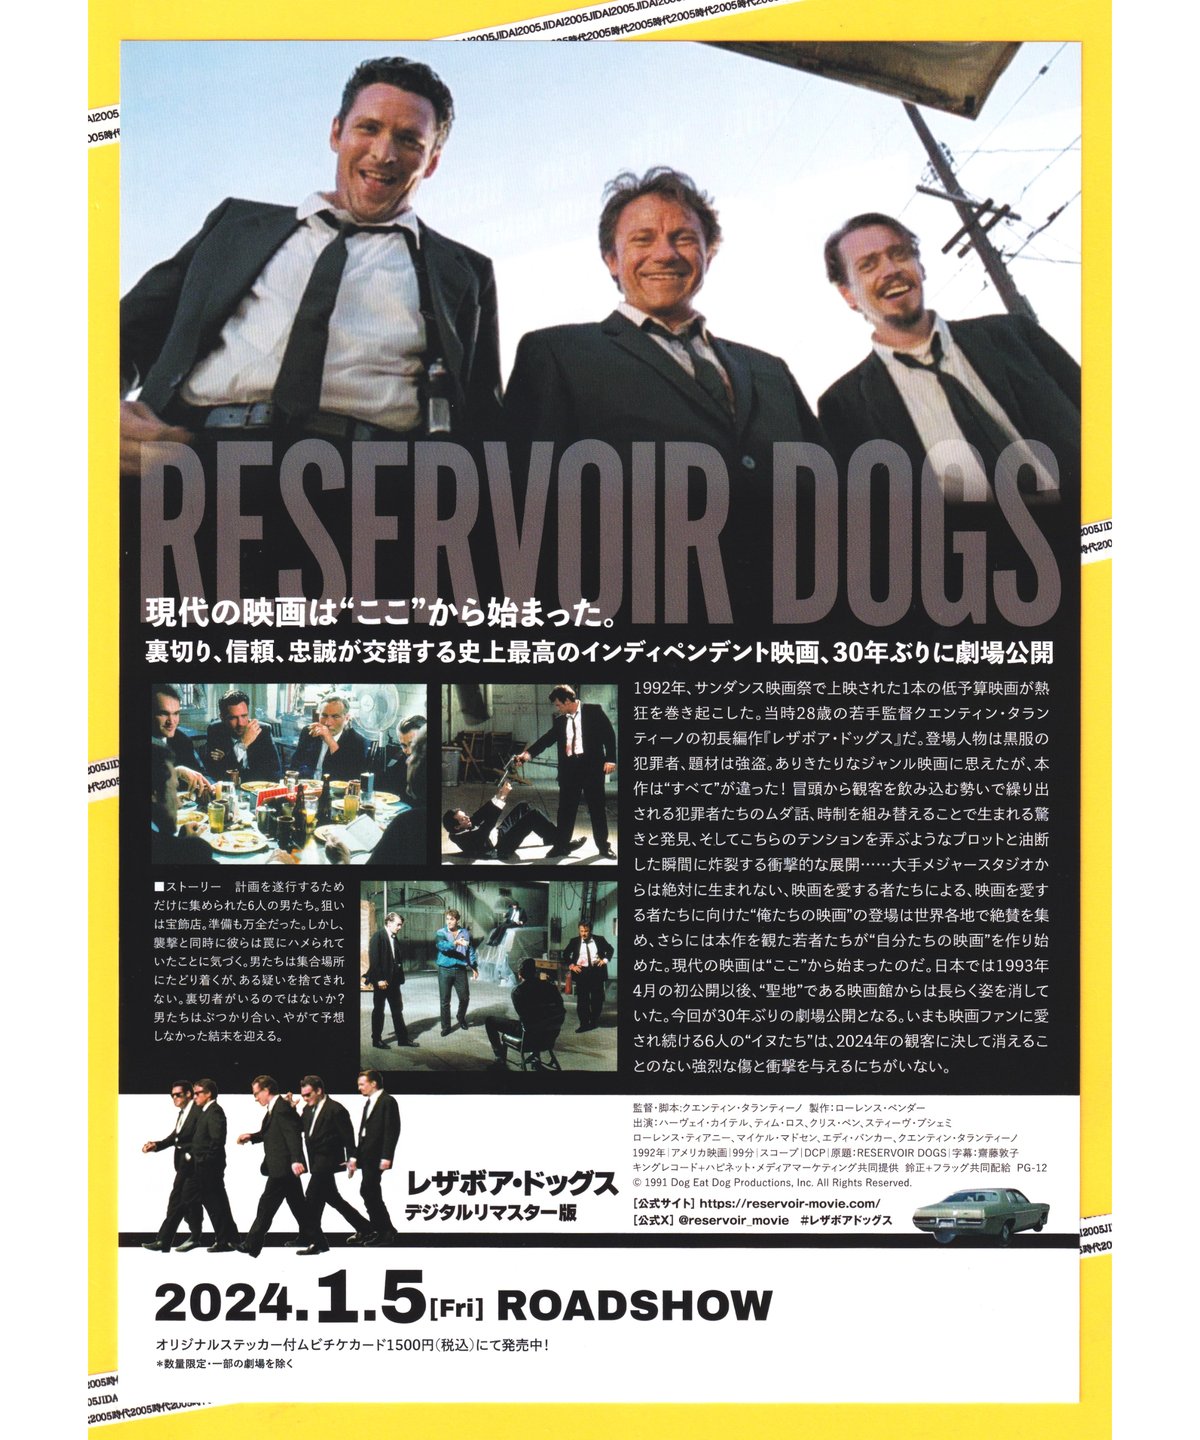 レザボア ドッグス Reservoir dogs タランティーノ 映画 tシャツ